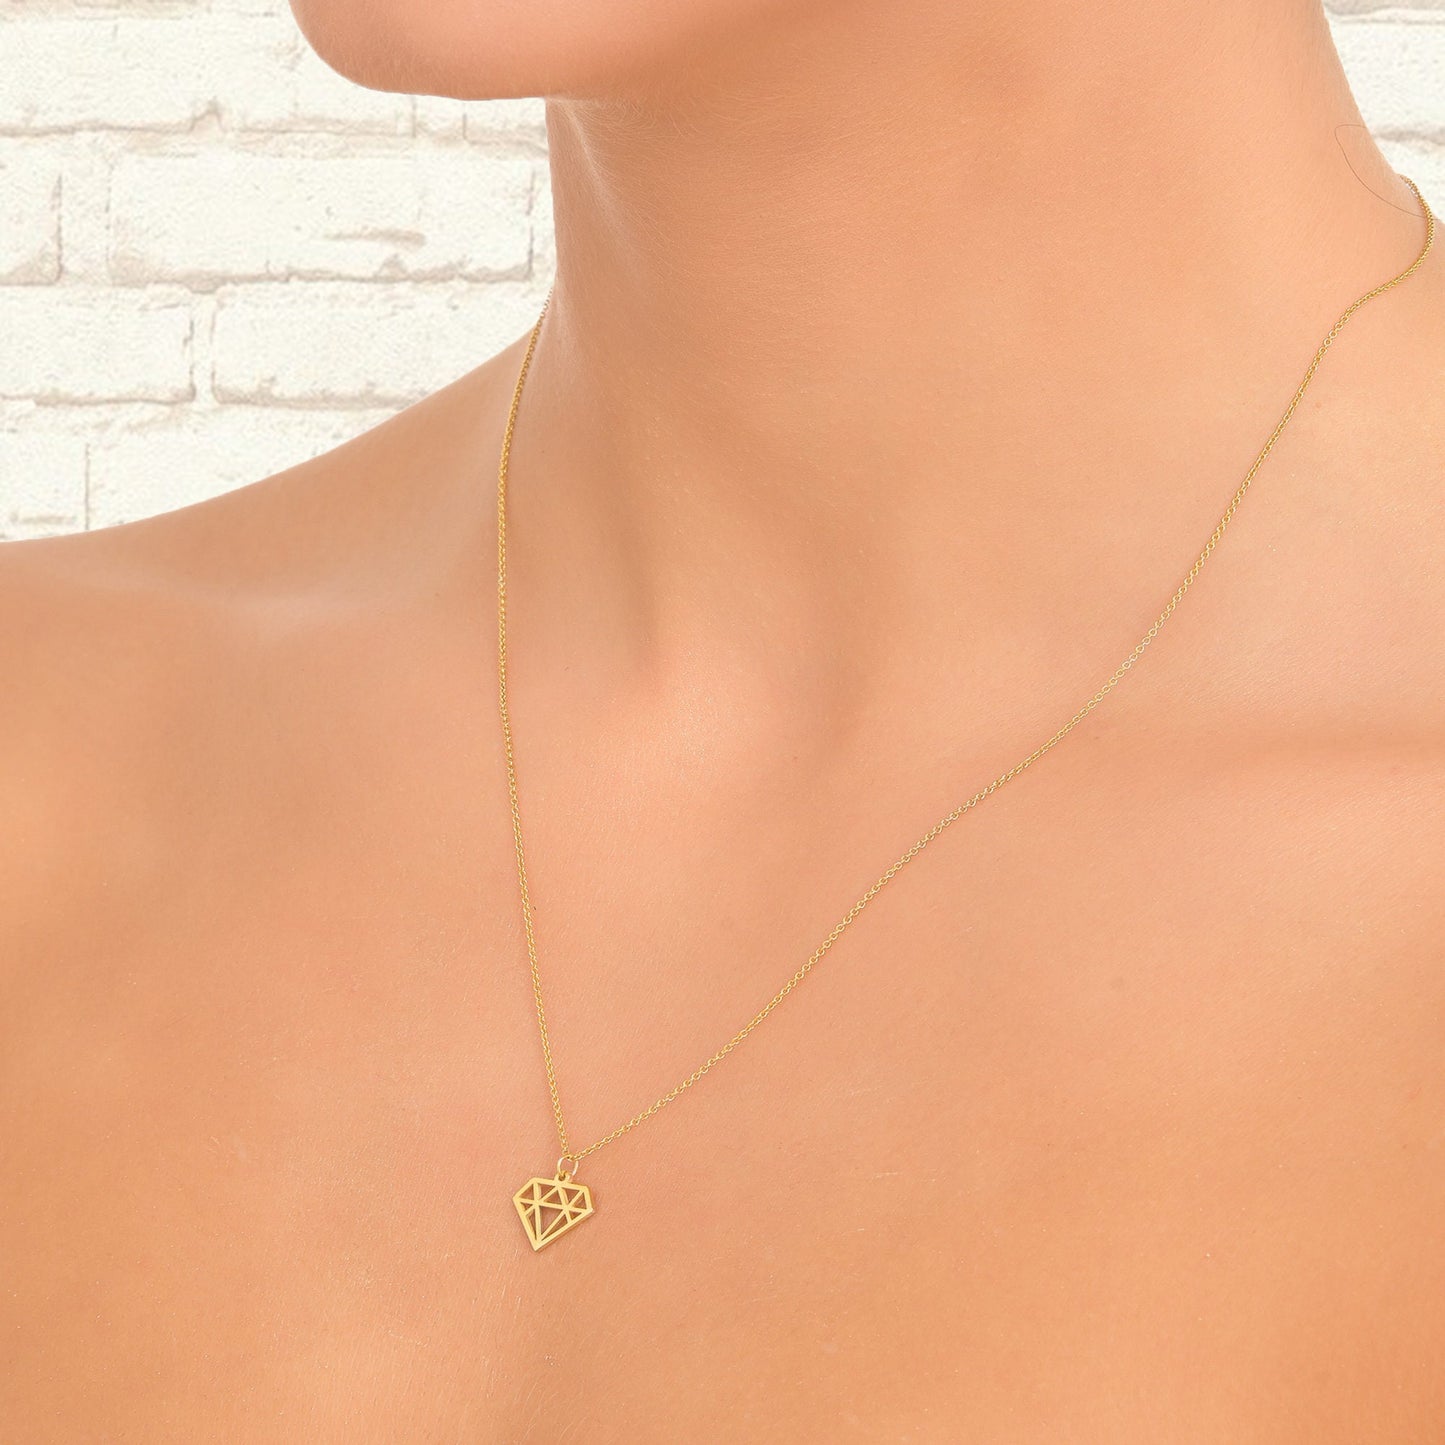 Diamond shape necklace, 14k Diamond shape Pendant, Solid Gold Diamond outline necklace, Diamond pattern, Diamond cutout, Geometric necklace